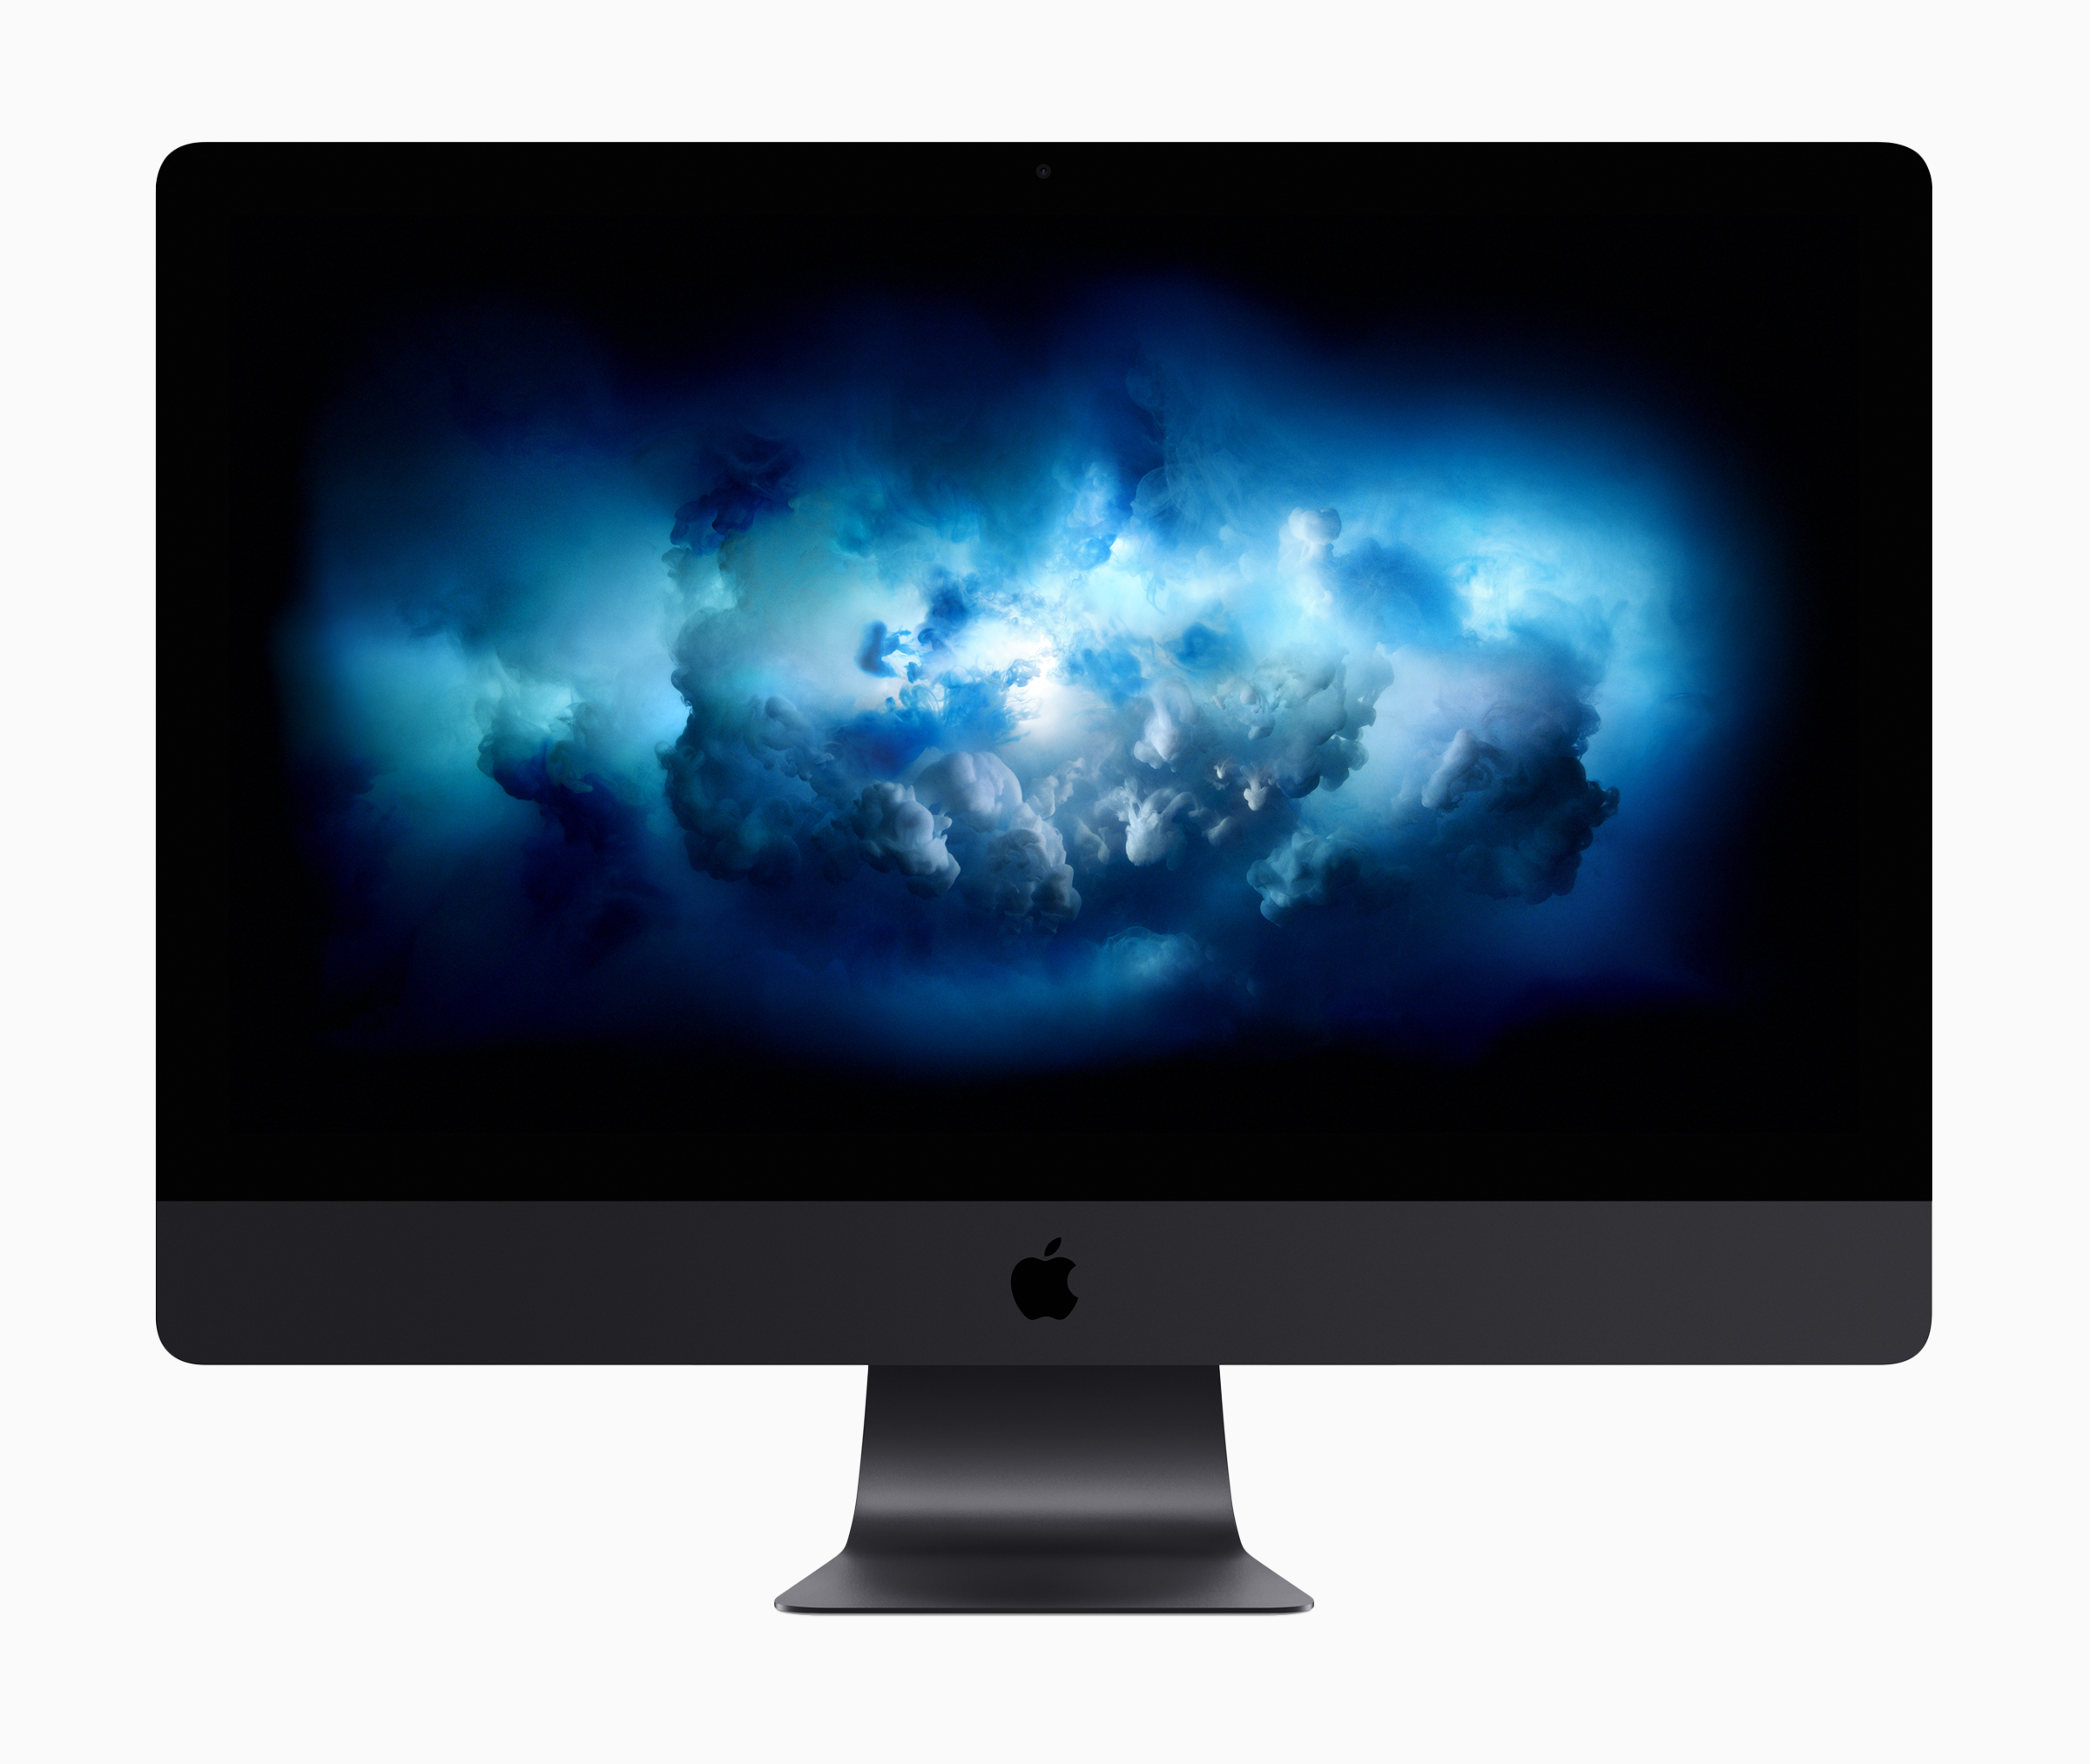 Immagine pubblicata in relazione al seguente contenuto: Apple annuncia un nuovo iMac Pro con CPU Intel Xeon e GPU AMD Radeon Pro Vega | Nome immagine: news26473_Apple-iMac-Pro-WWDC-2017_1.jpg